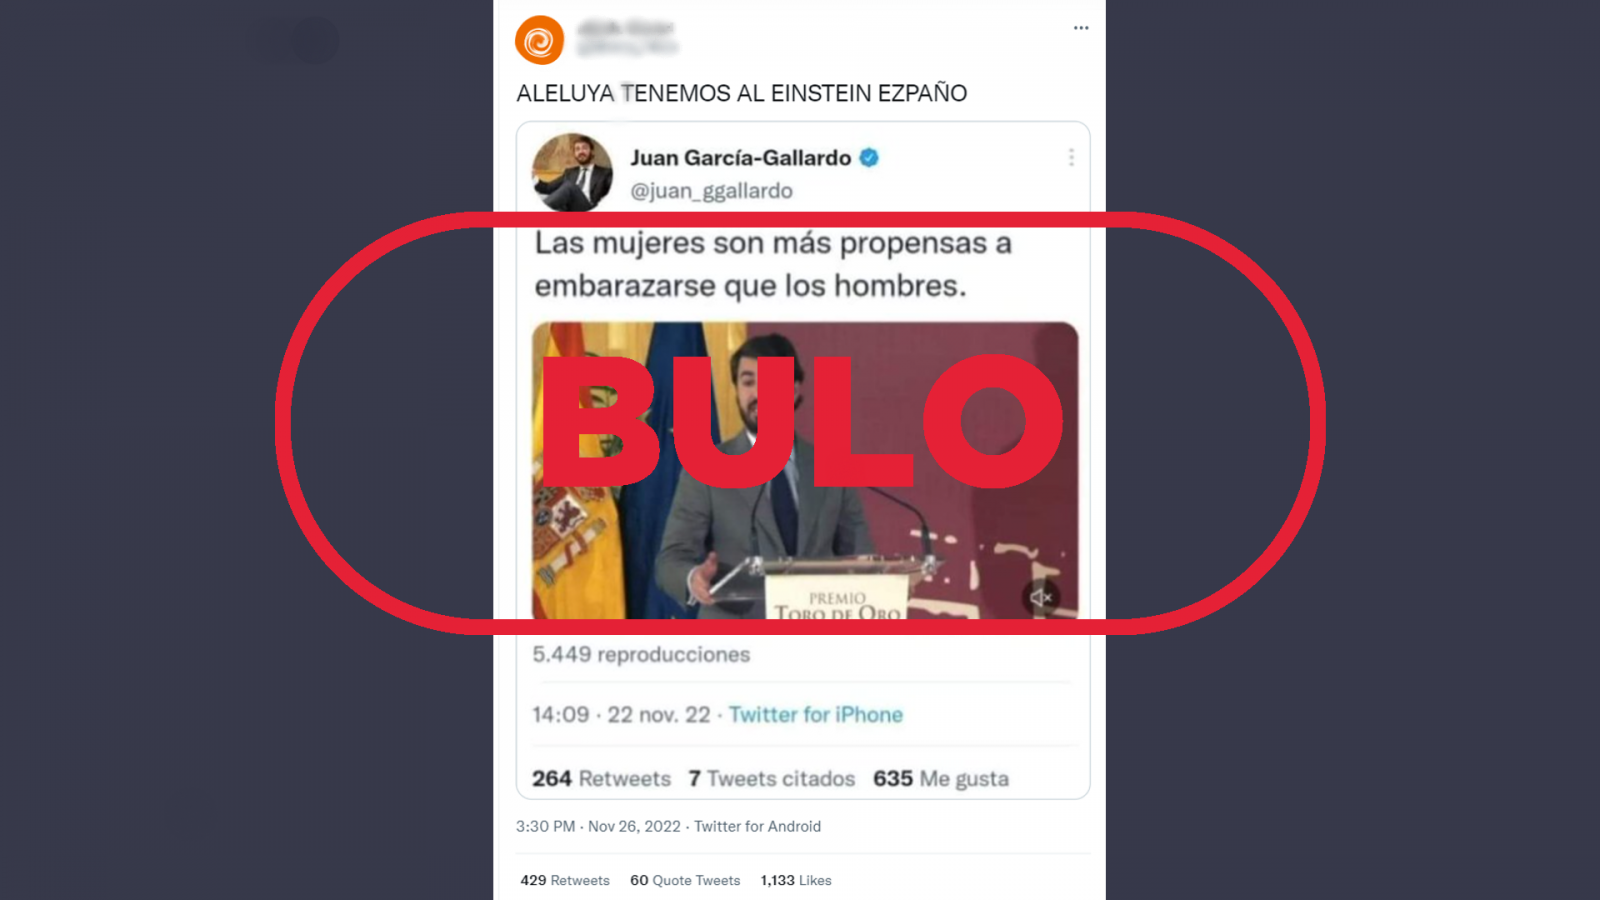 Mensaje que difunde el bulo con declaraciones falsas atribuidas a García-Gallardo, con el sello 'bulo' en rojo